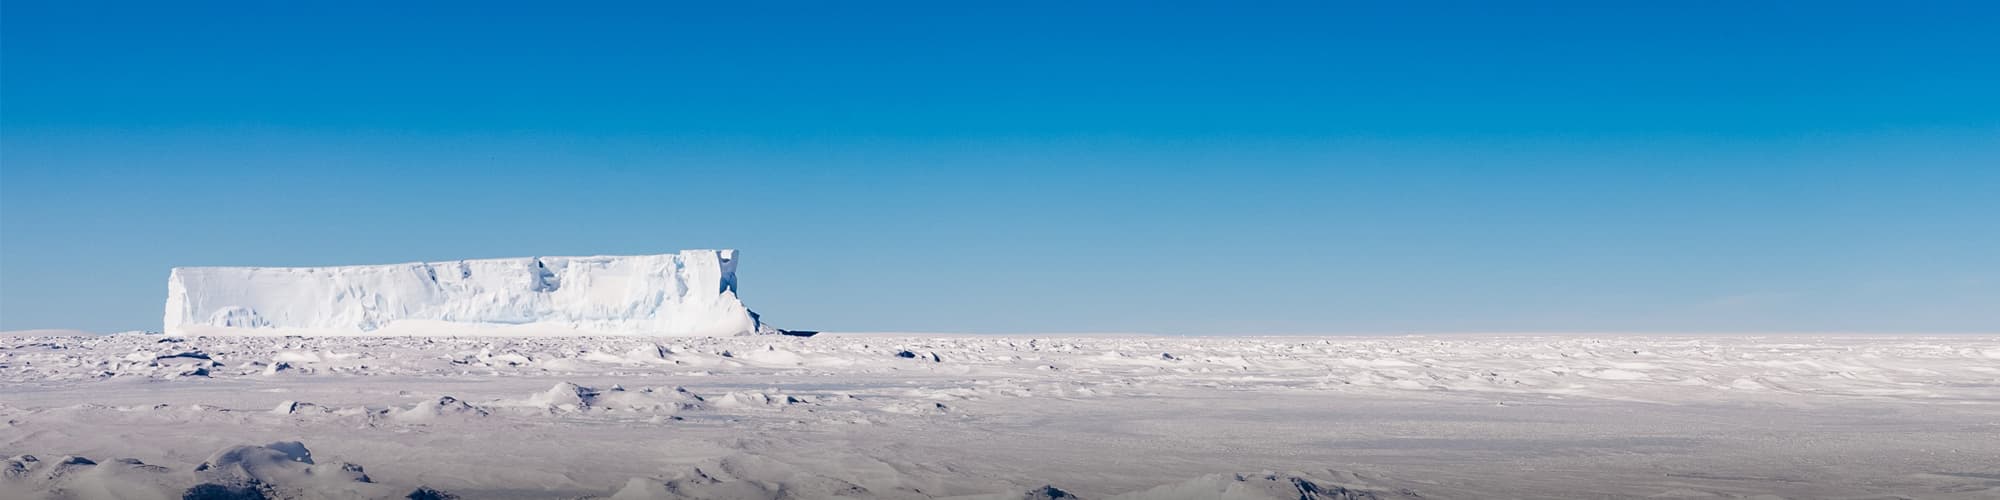 Voyage au Pôle Nord Géographique © Mario_Hoppmann